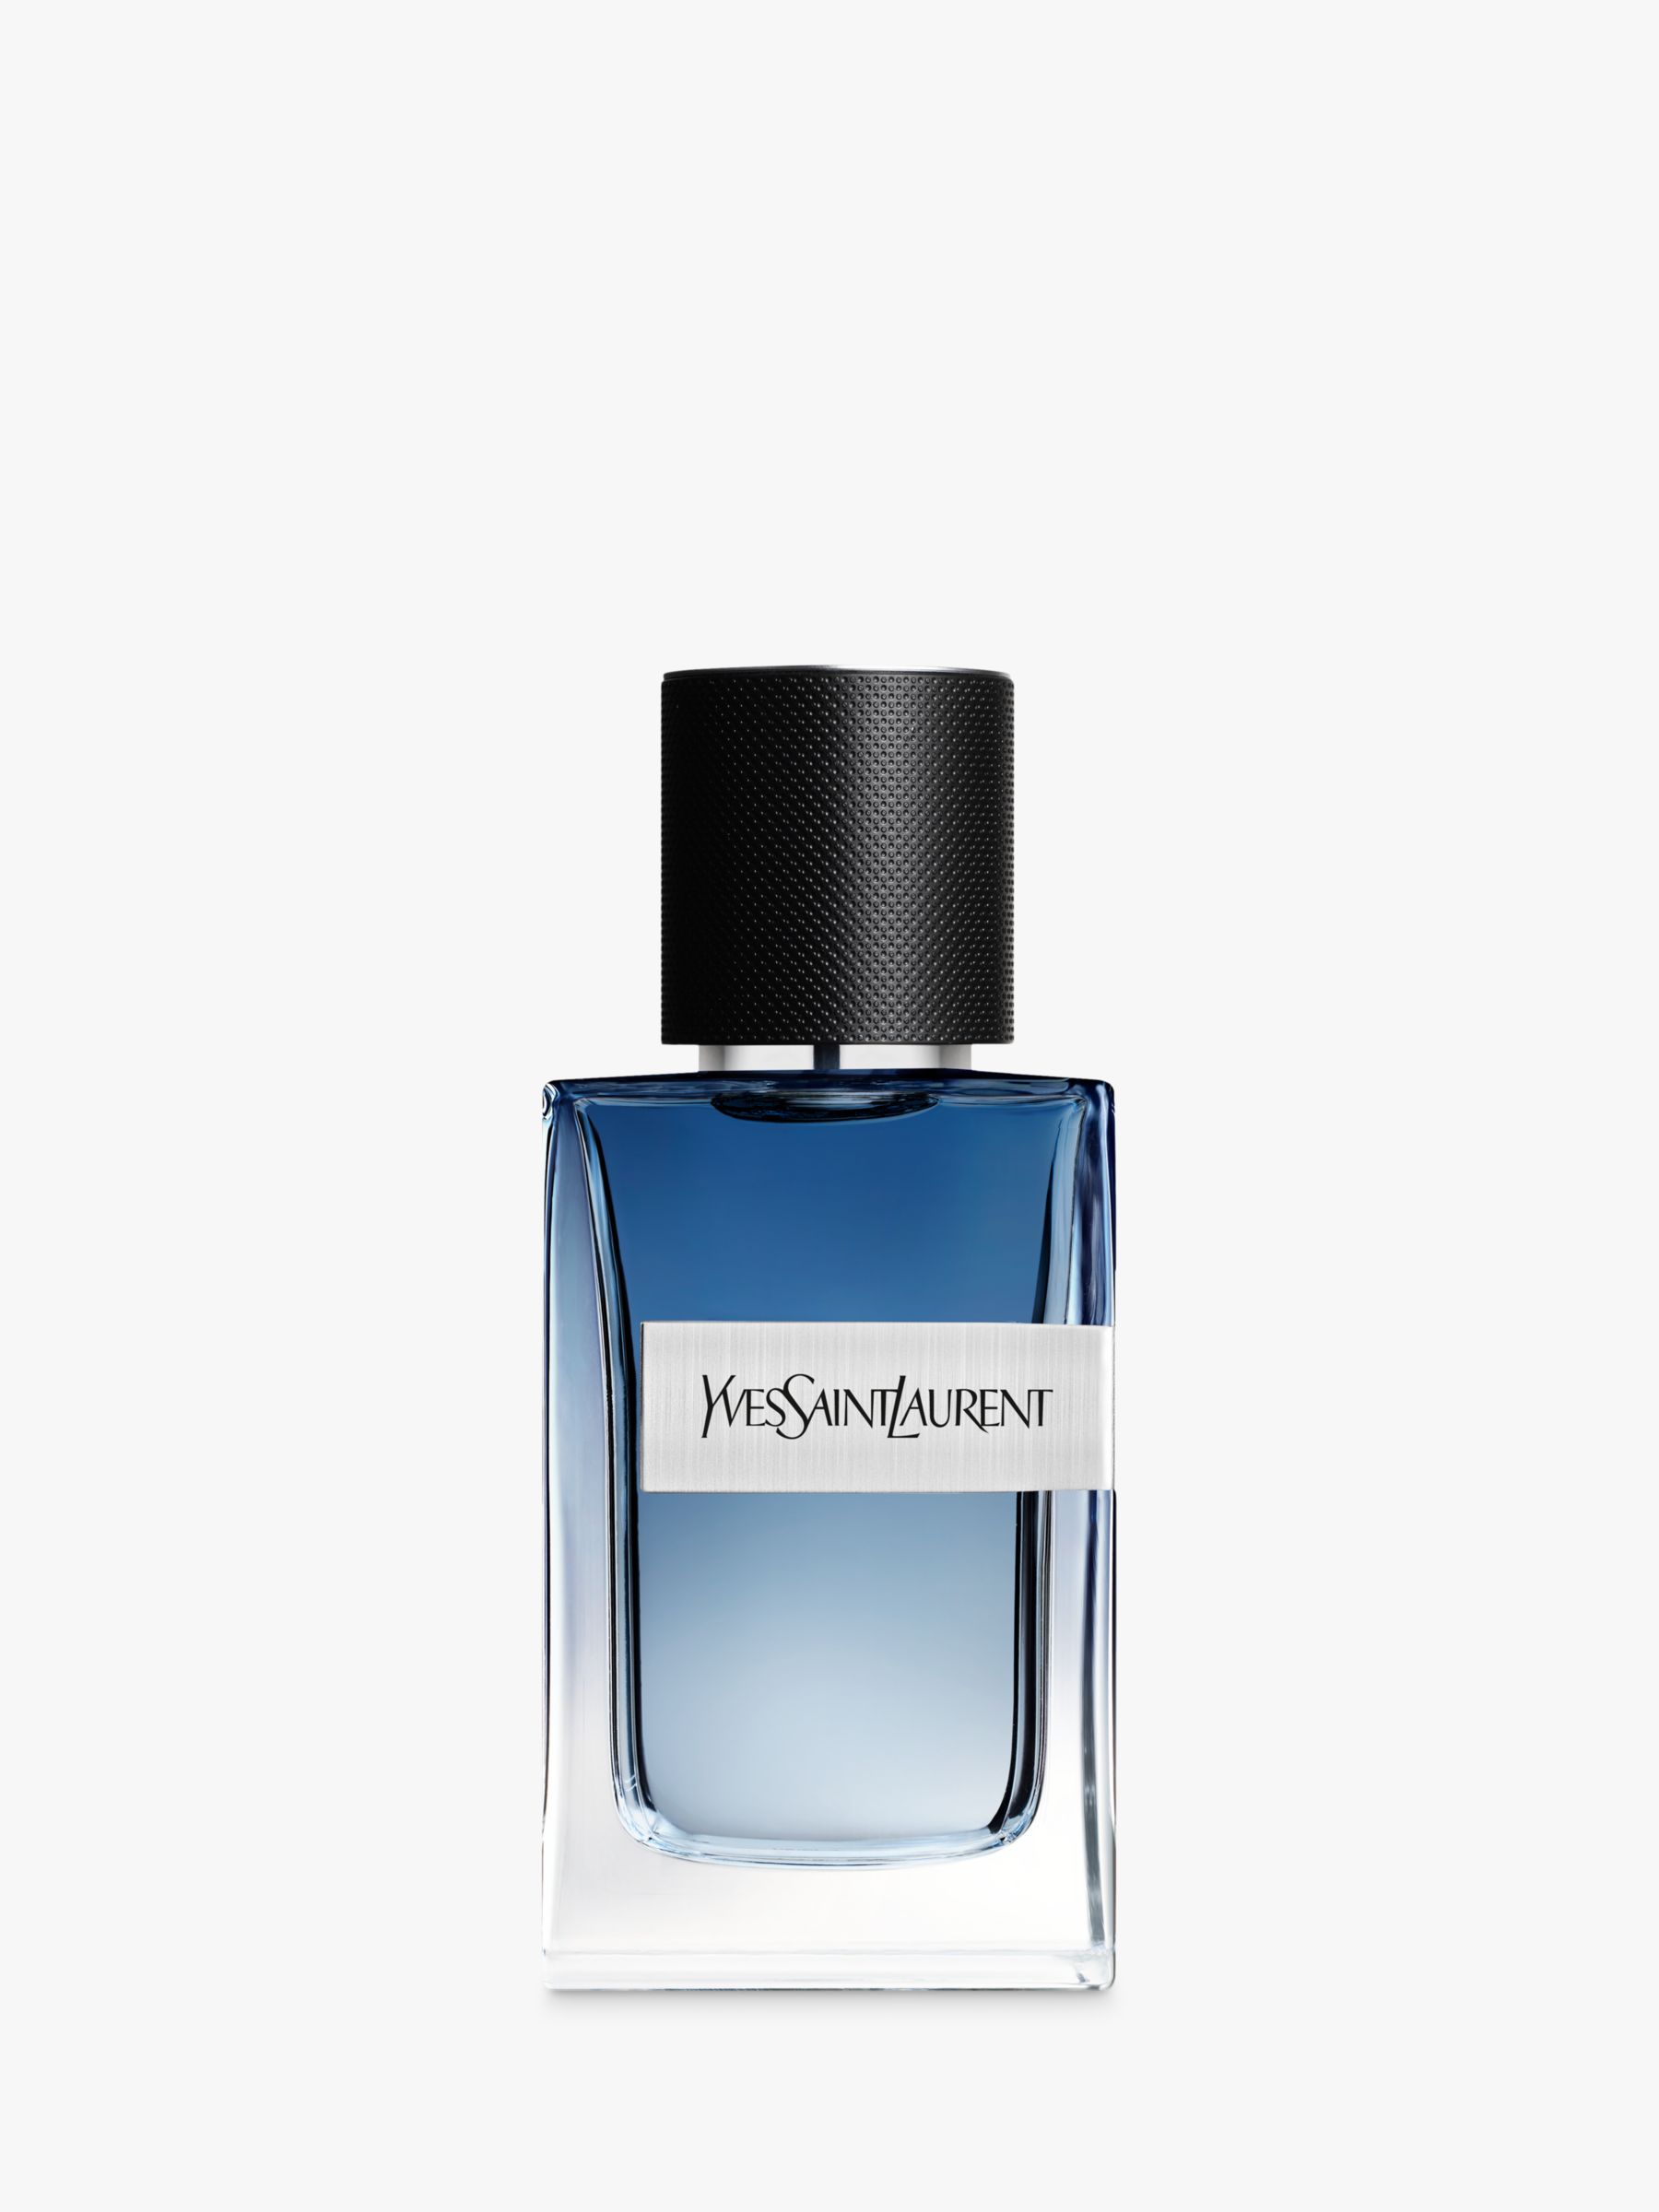 Y Eau de Parfum Intense Yves Saint Laurent cologne - a new